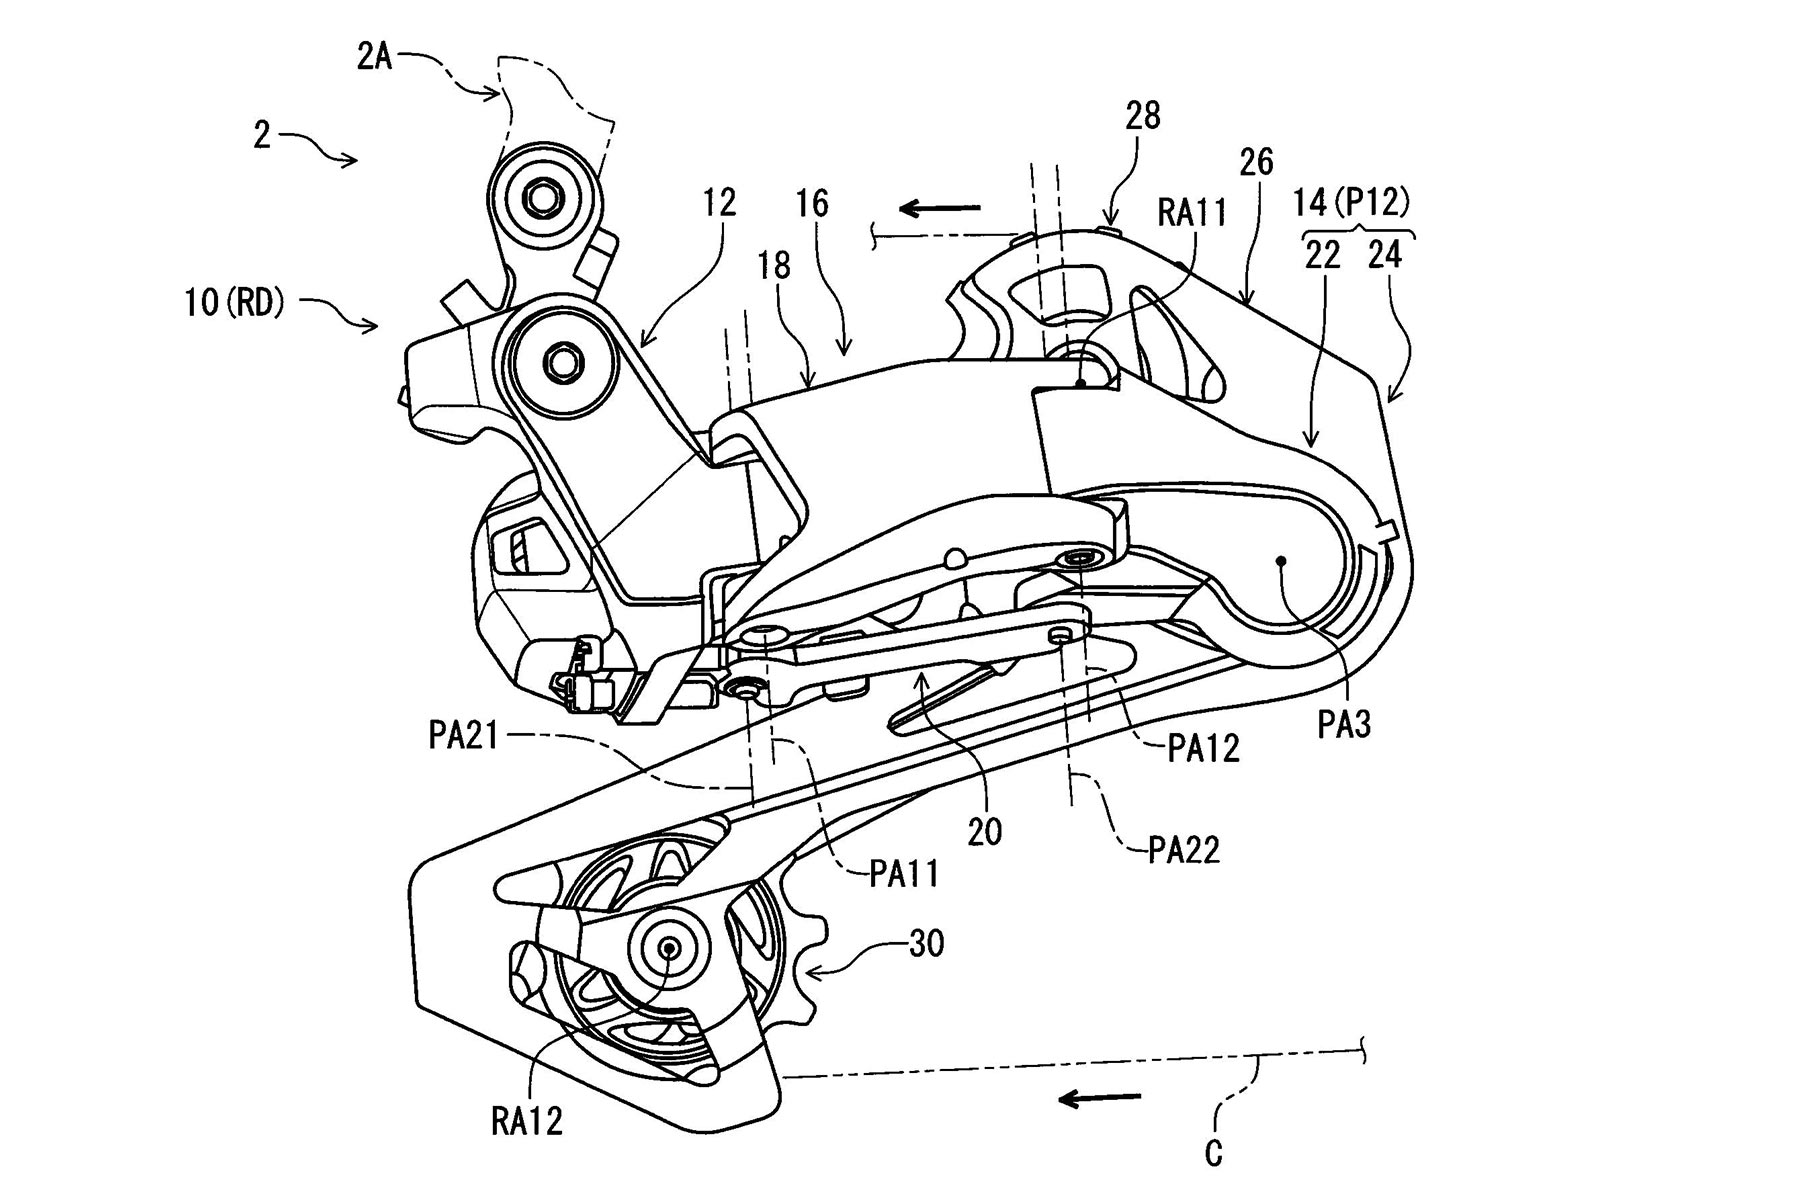 Concetto di prototipo di deragliatore a cambio elettronico galleggiante resistente agli urti con brevetto Shimano Di2